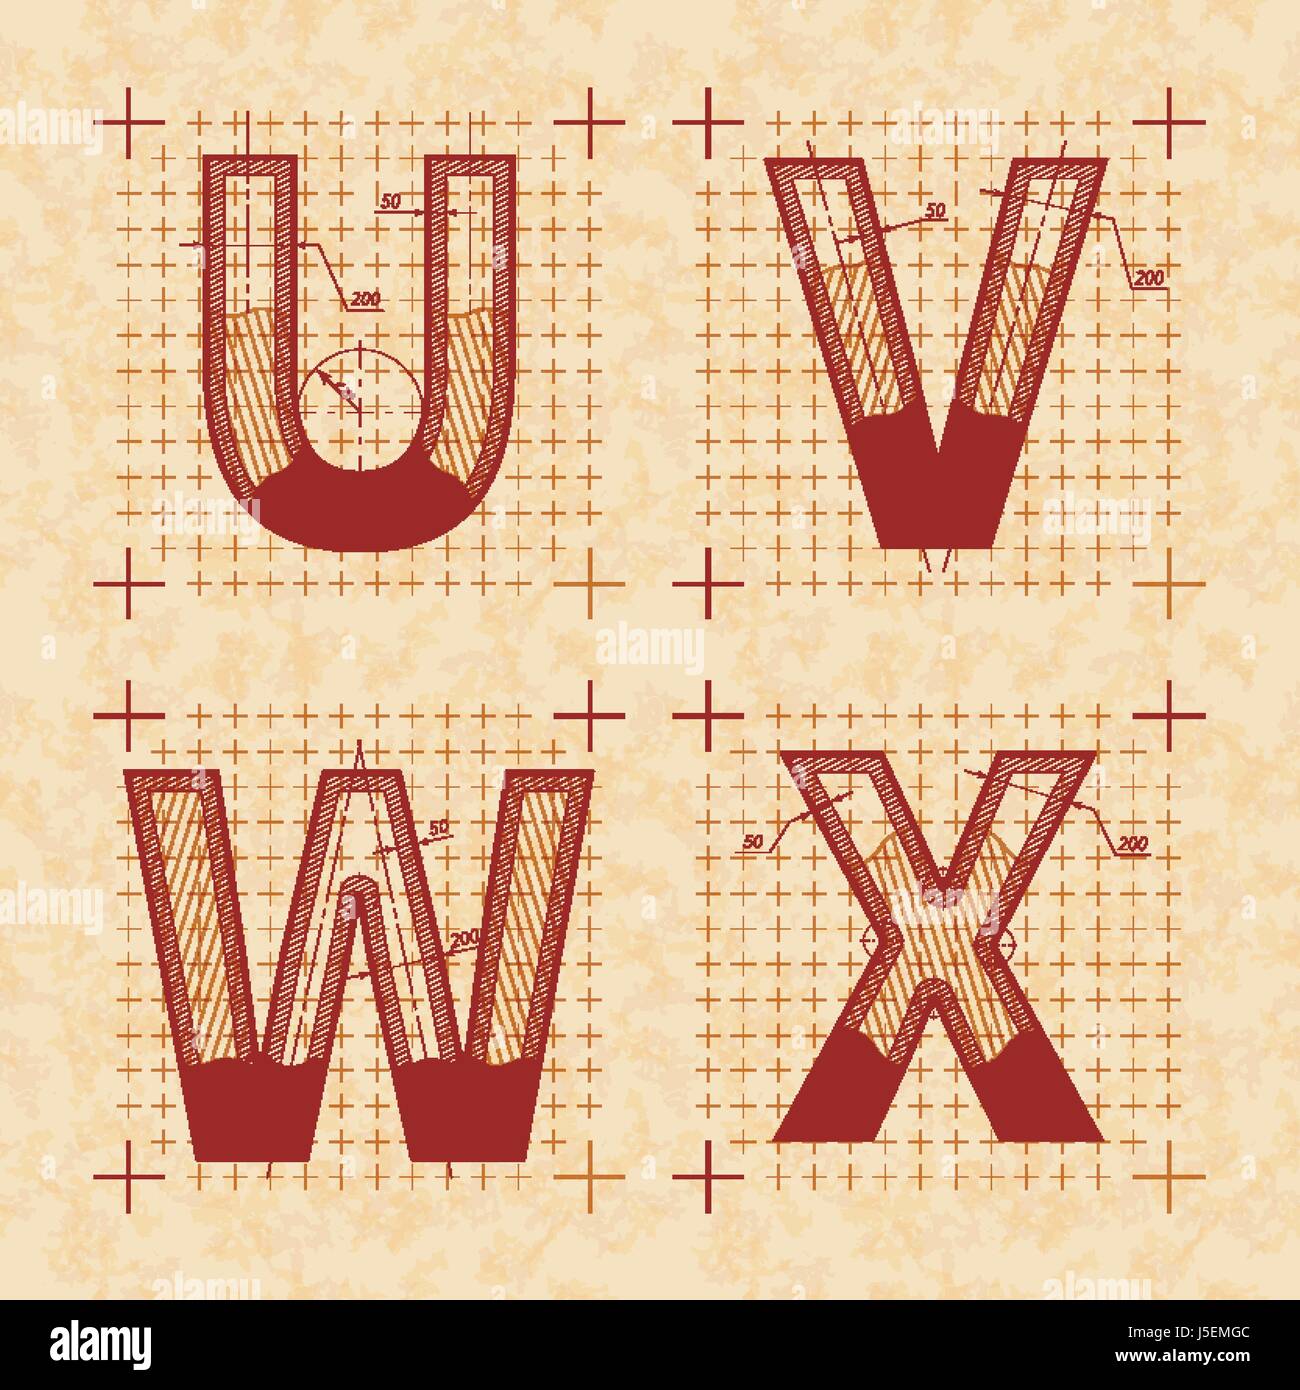 Croquis de l'inventeur médiévale U V W X lettres. Retro style police sur vieux papier texturé Illustration de Vecteur